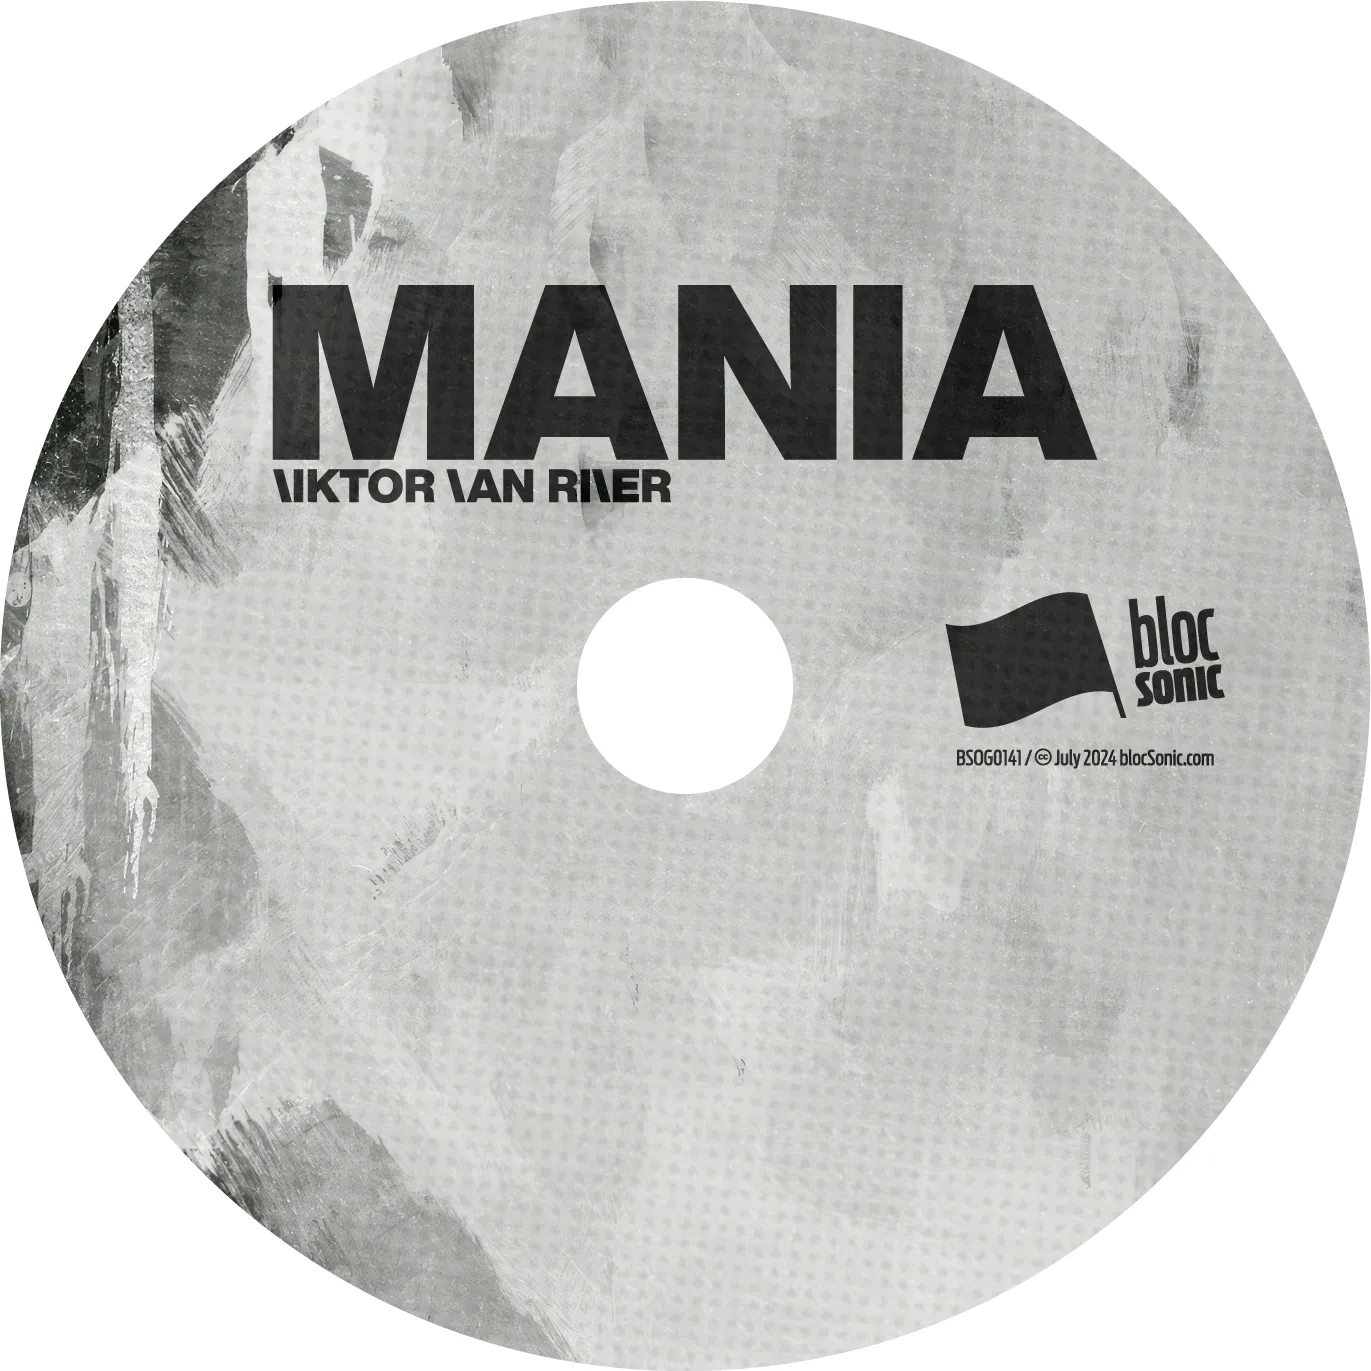 Album disc art for “Mania” by Viktor Van River